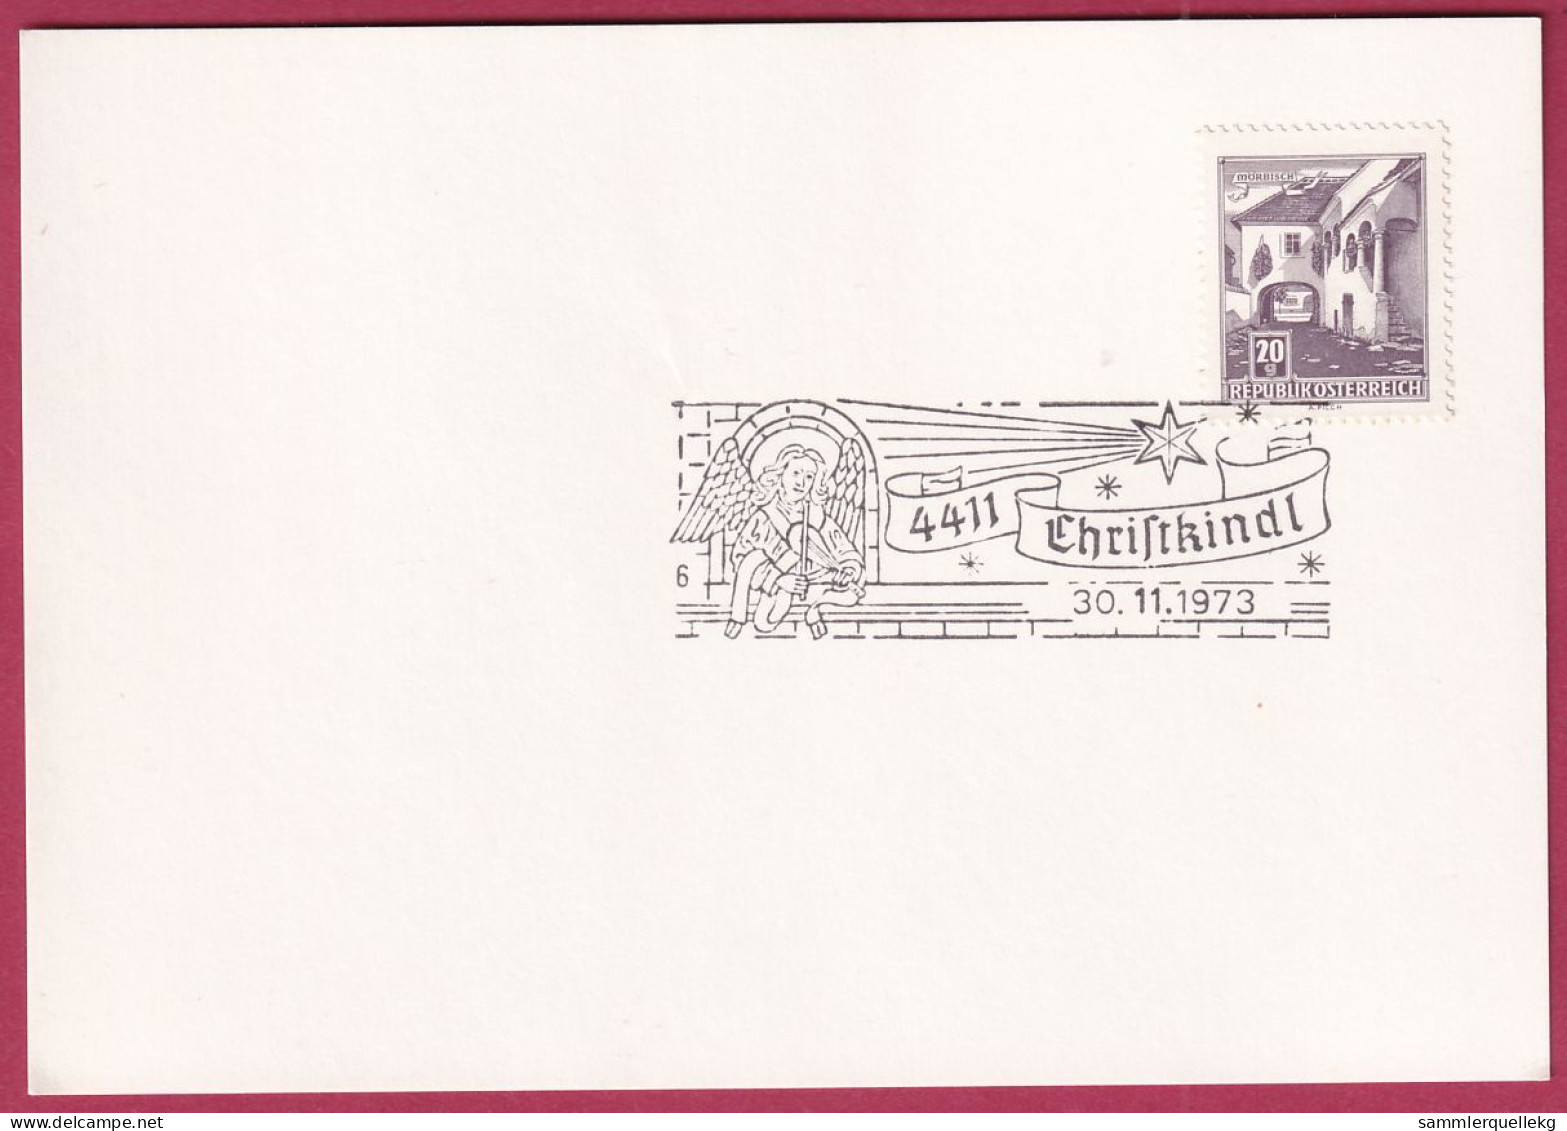 Österreich Sonderstempel Auf Karte, 4411 Christkindl 30. 11. 1973 - Covers & Documents